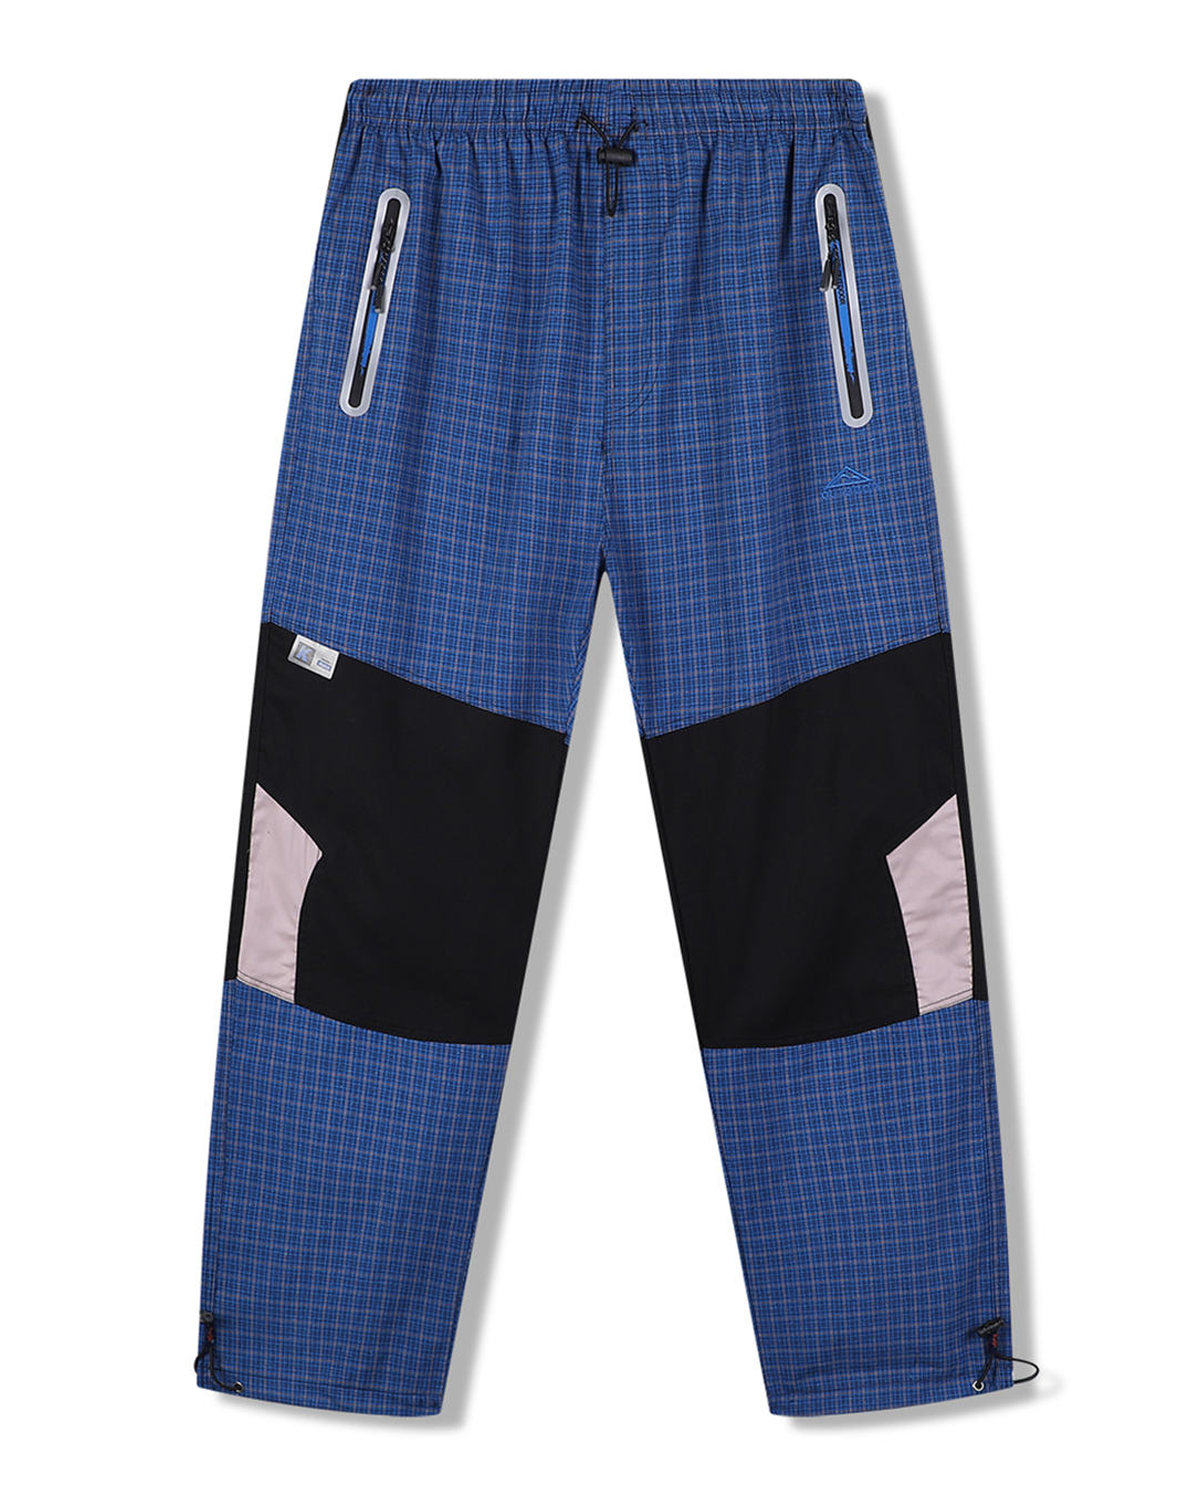 Pánské plátěné kalhoty - KUGO FK7610, modrá Barva: Modrá, Velikost: XXL